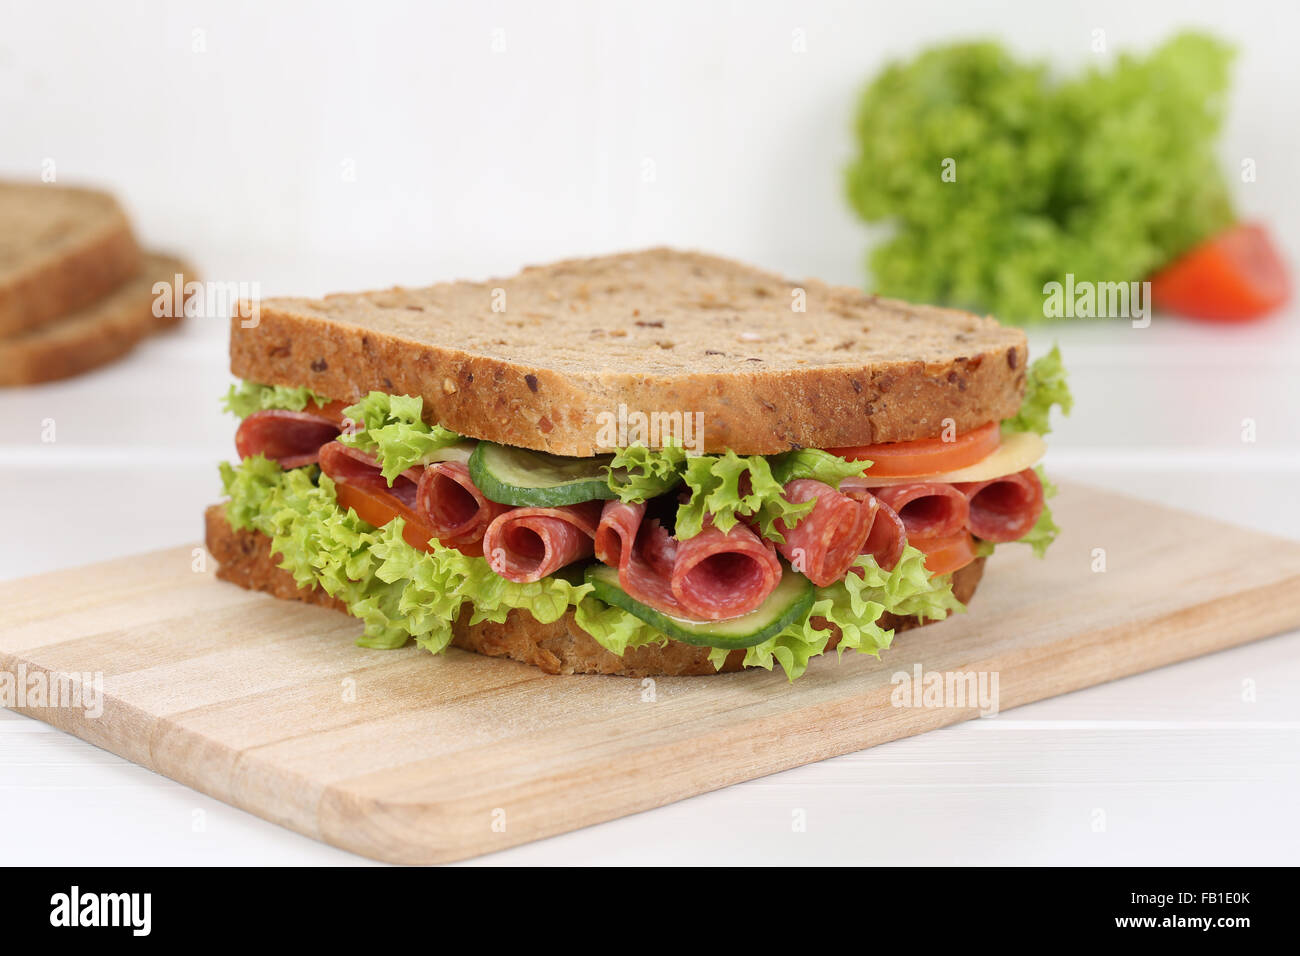 Griller le pain pour le petit-déjeuner sandwich au salami, fromage, tomates, laitue Banque D'Images